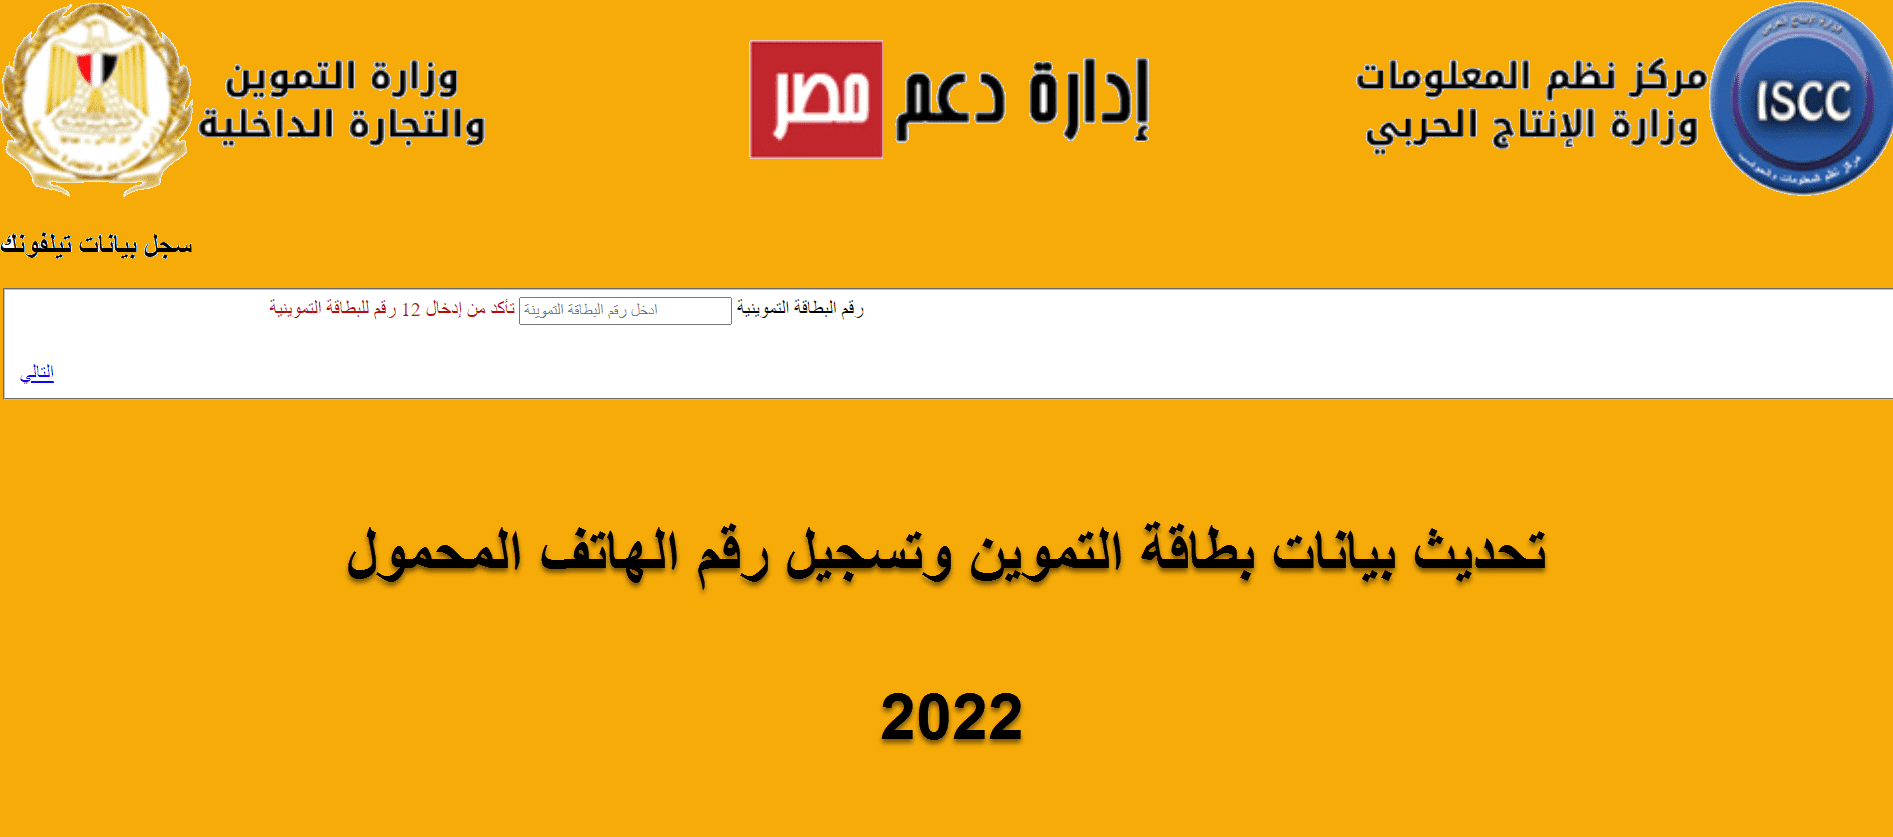 موقع دعم مصر لتسجيل الهاتف المحمول لبطاقة التموين